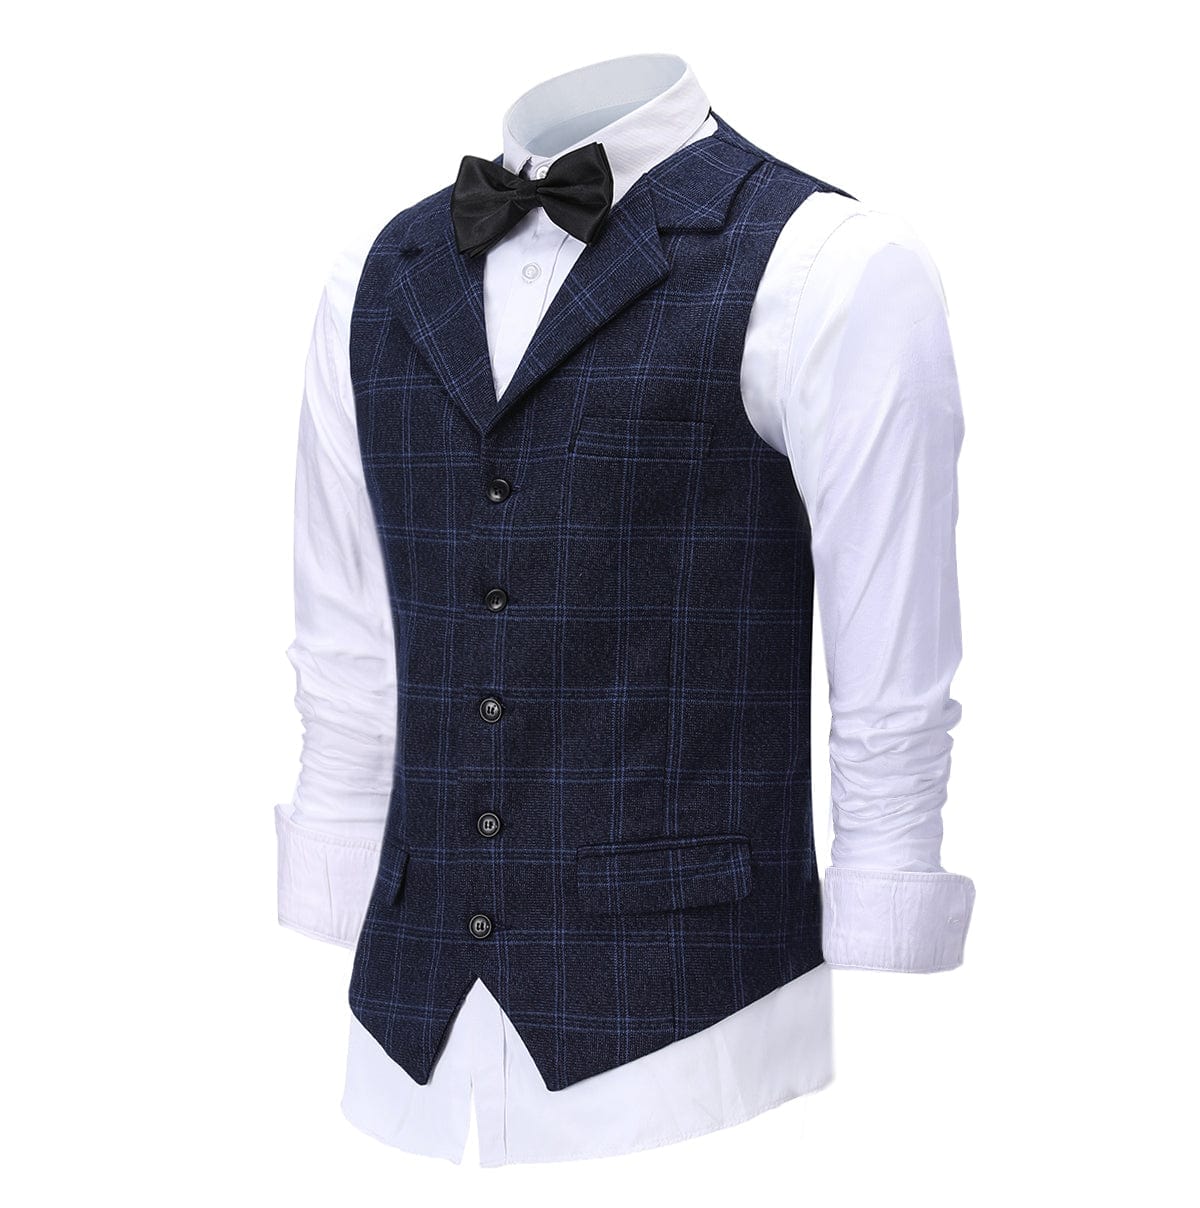 ceehuteey Men's Suit Vests Fashion Notch Lapel Waistcoat